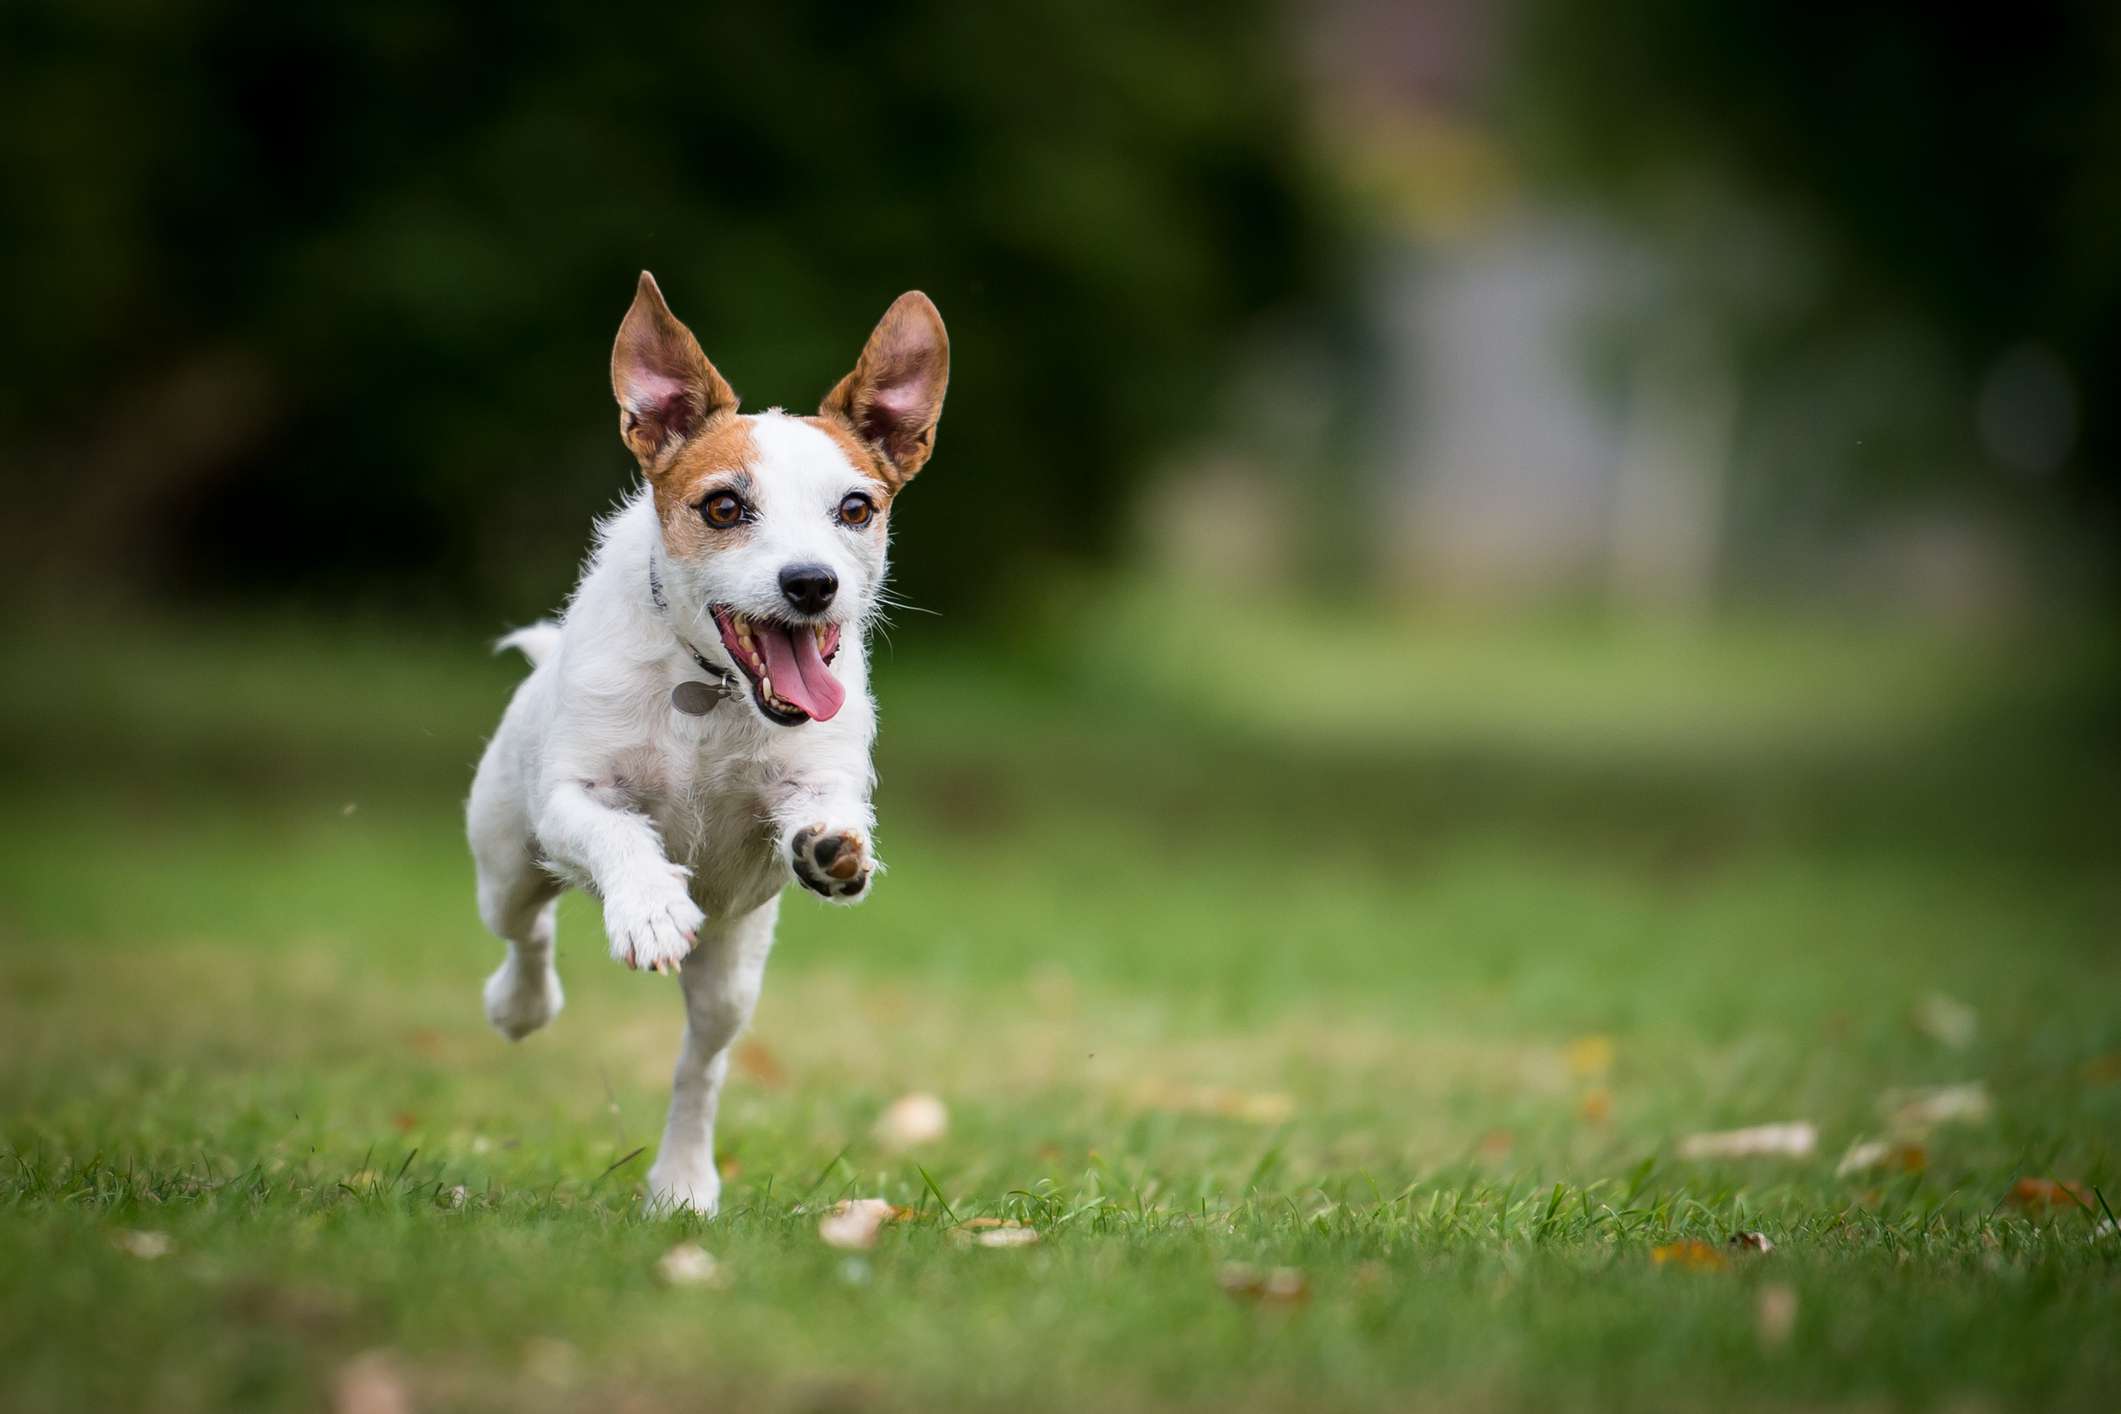 Jack Russell Terrier running on grass